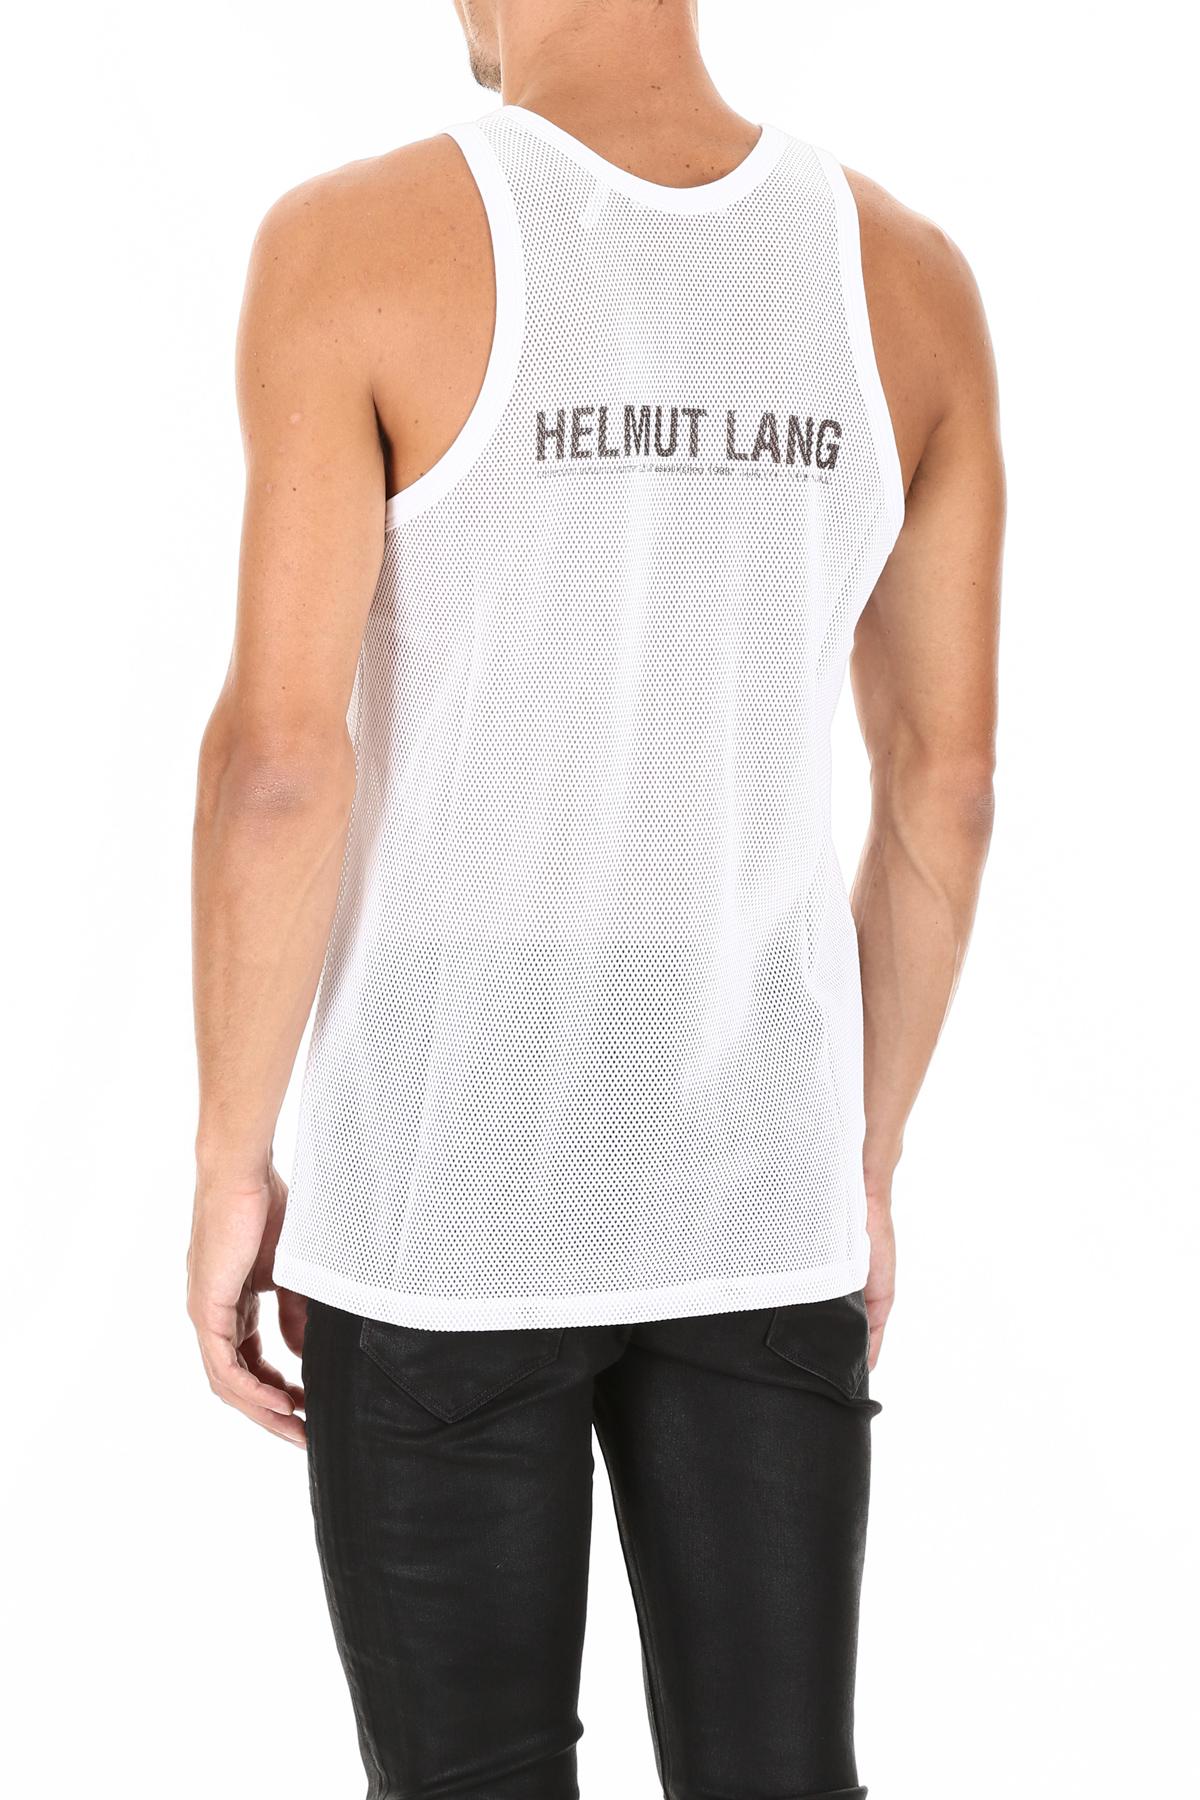 Helmut Lang Mesh Tank Top in White for Men | Lyst